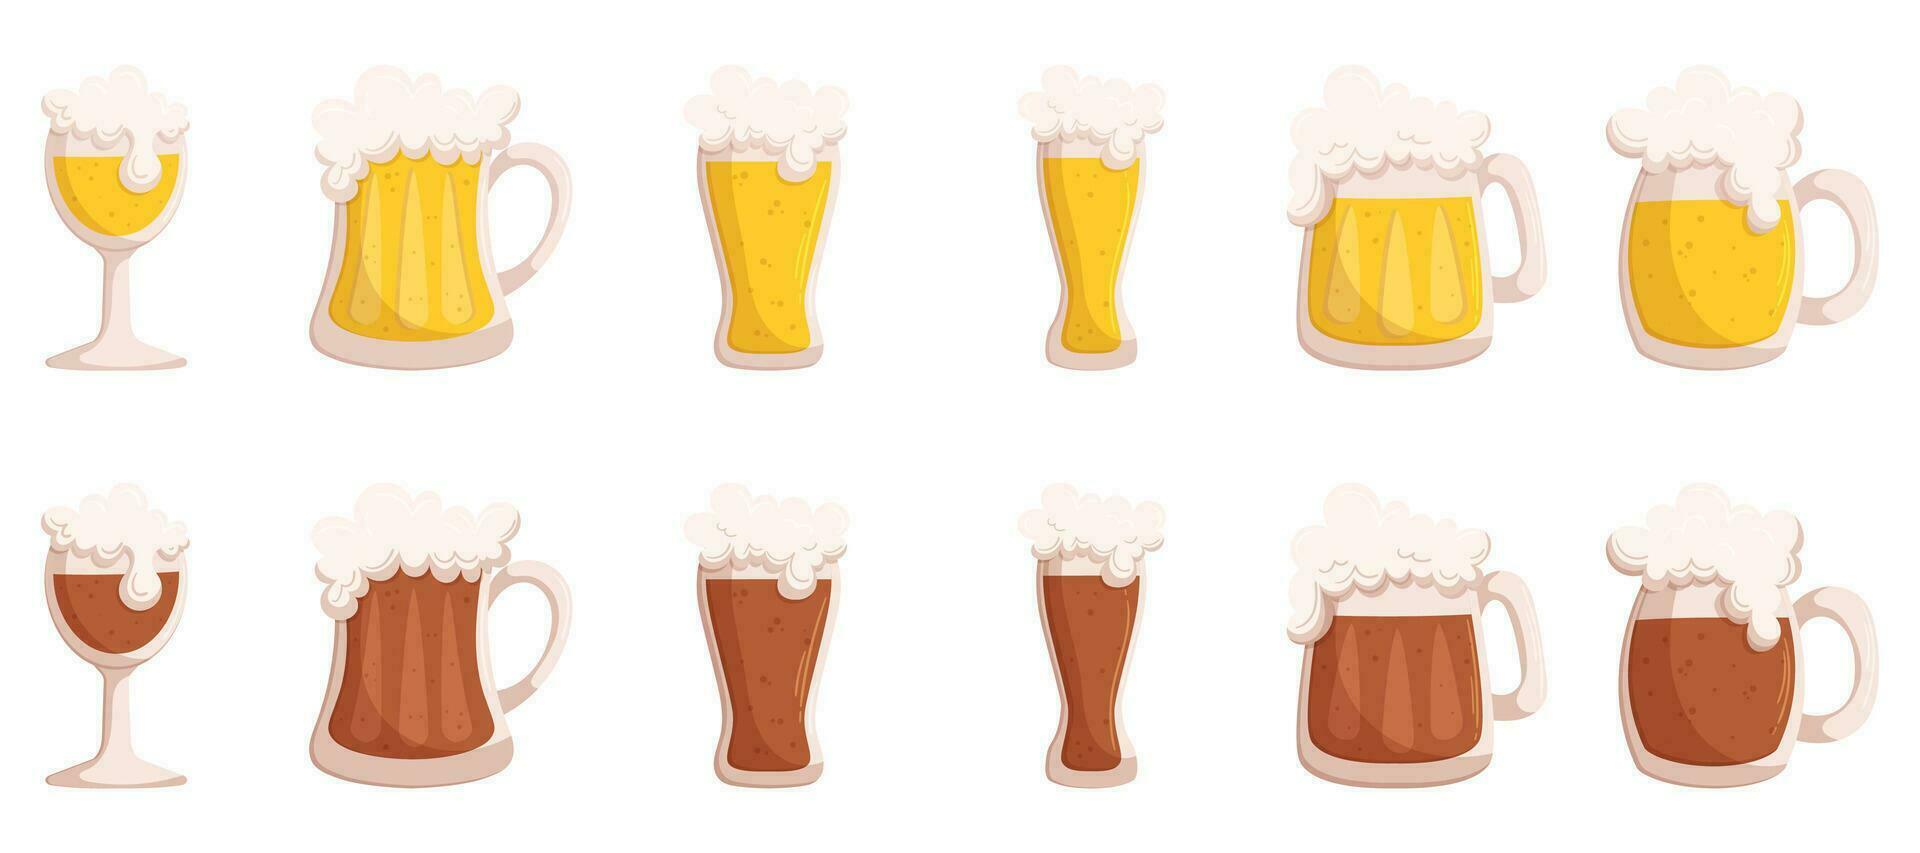 vecteur illustration de une variété de Bière des tasses mettant en valeur différent les types de bière. main tiré dessin animé illustration